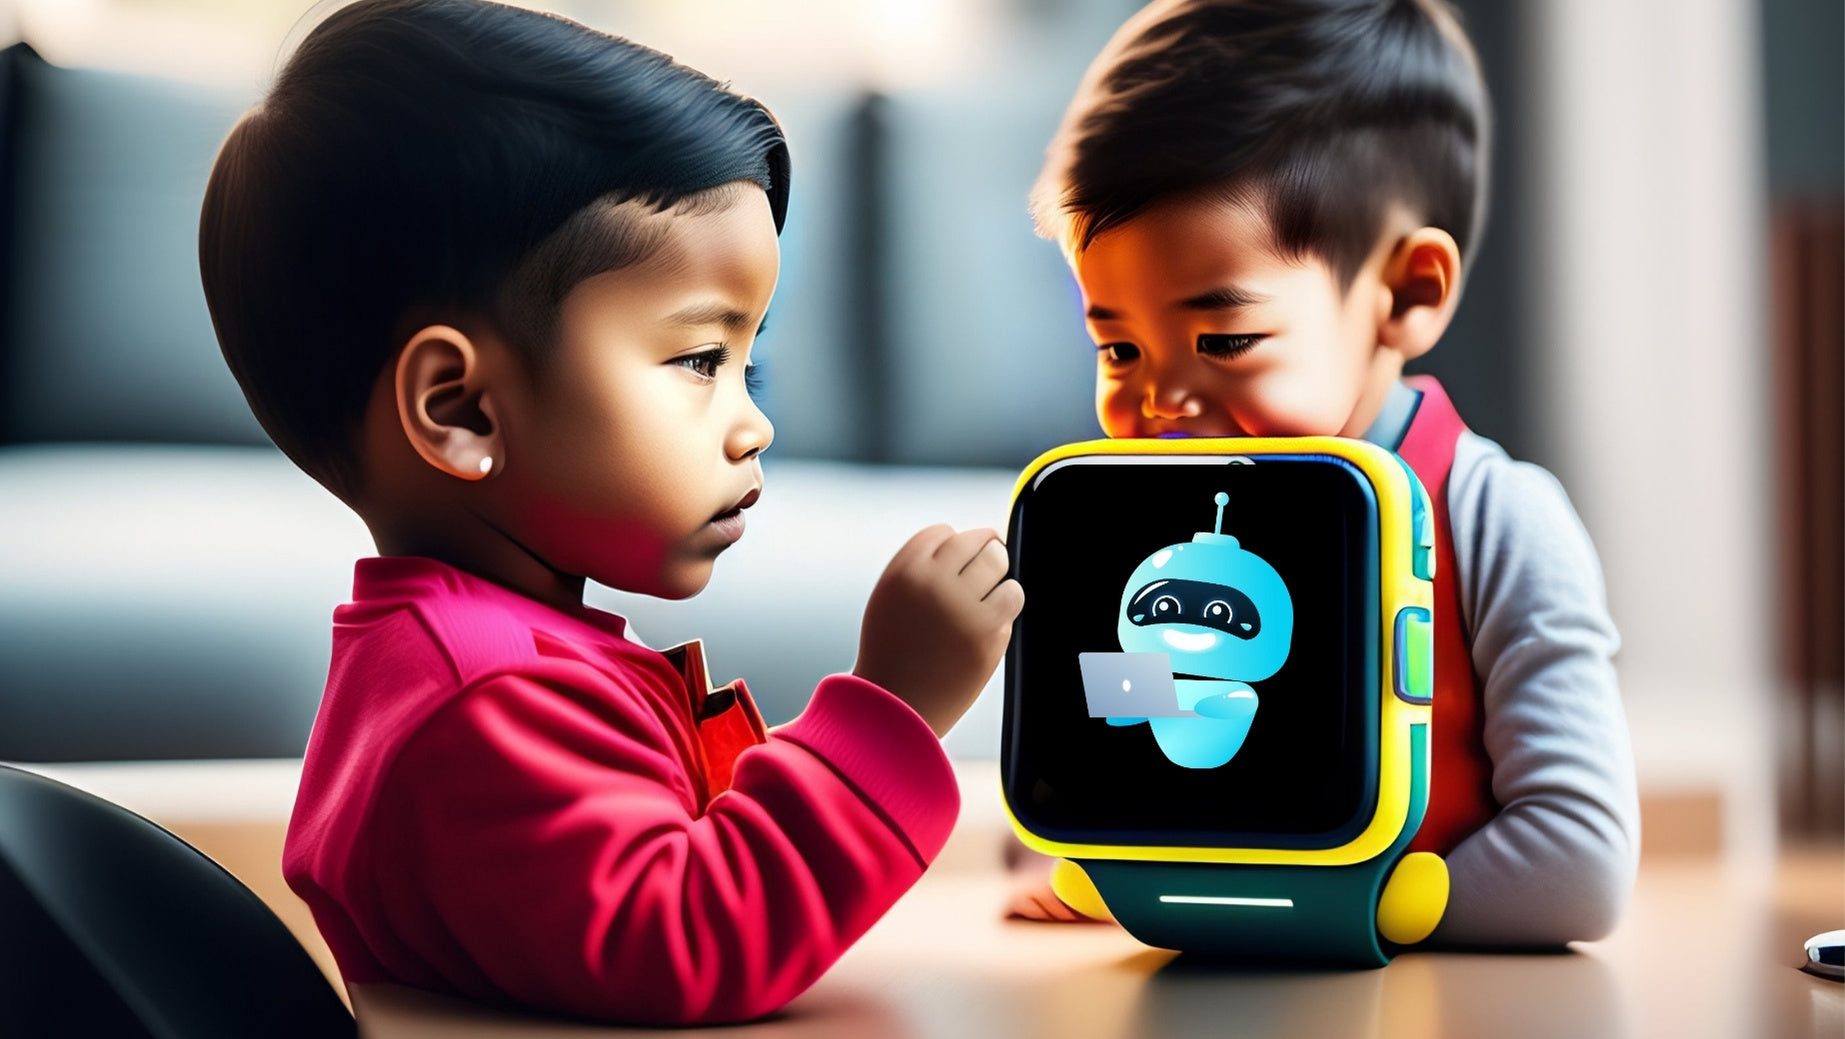 Podomètre des montres connectées pour enfants : un outil pour encourag –  SMARTWATCHPHONE